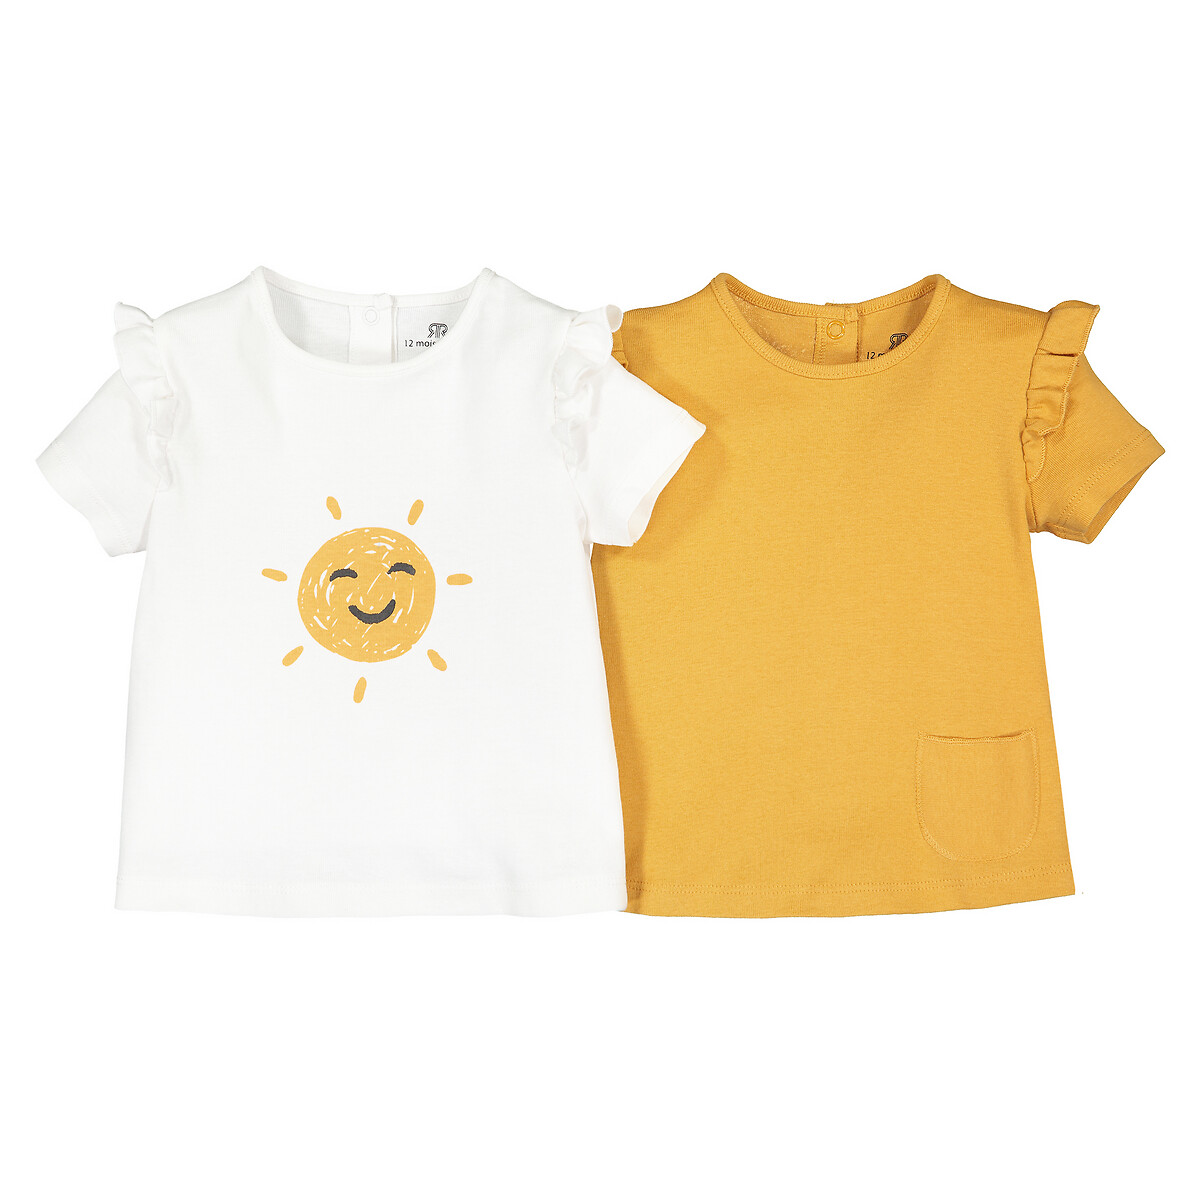 Комплект из 2 футболок с Воланами из биохлопка 1 мес-2 лет 1 мес. - 54 см желтый